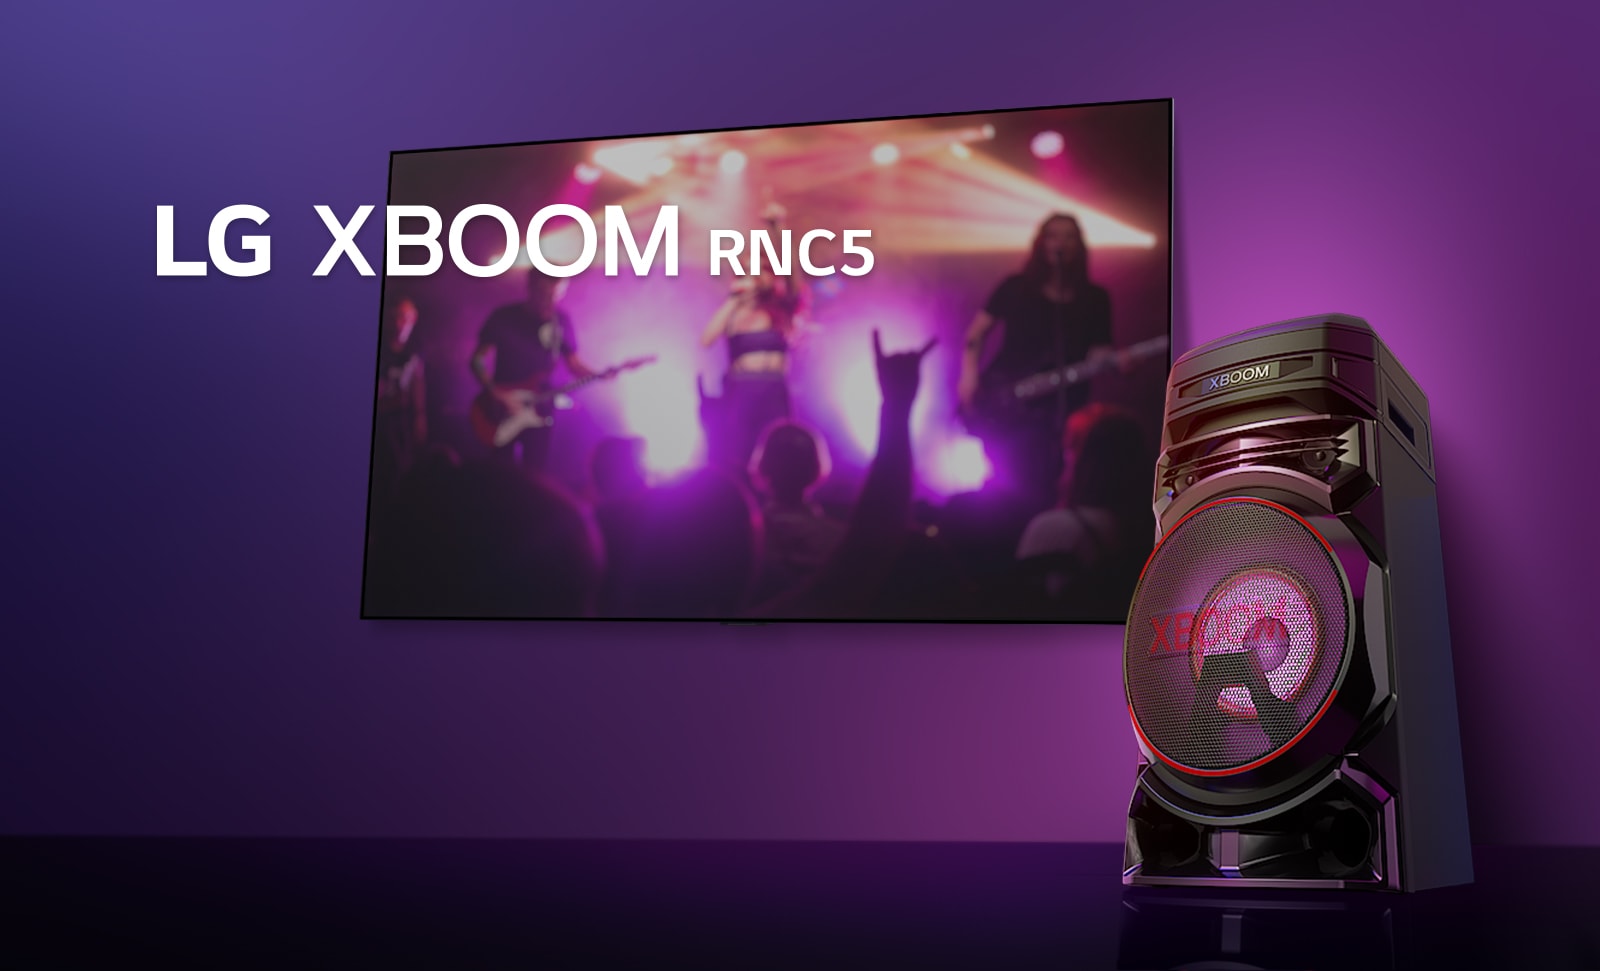 Prikaz desne strane zvučnika LG XBOOM RNC5 pod oštrim uglom spram ljubičaste pozadine.  Osvetljenje zvučnika XBOOM takođe je ljubičasto. Na TV ekranu se prikazuje scena koncerta.